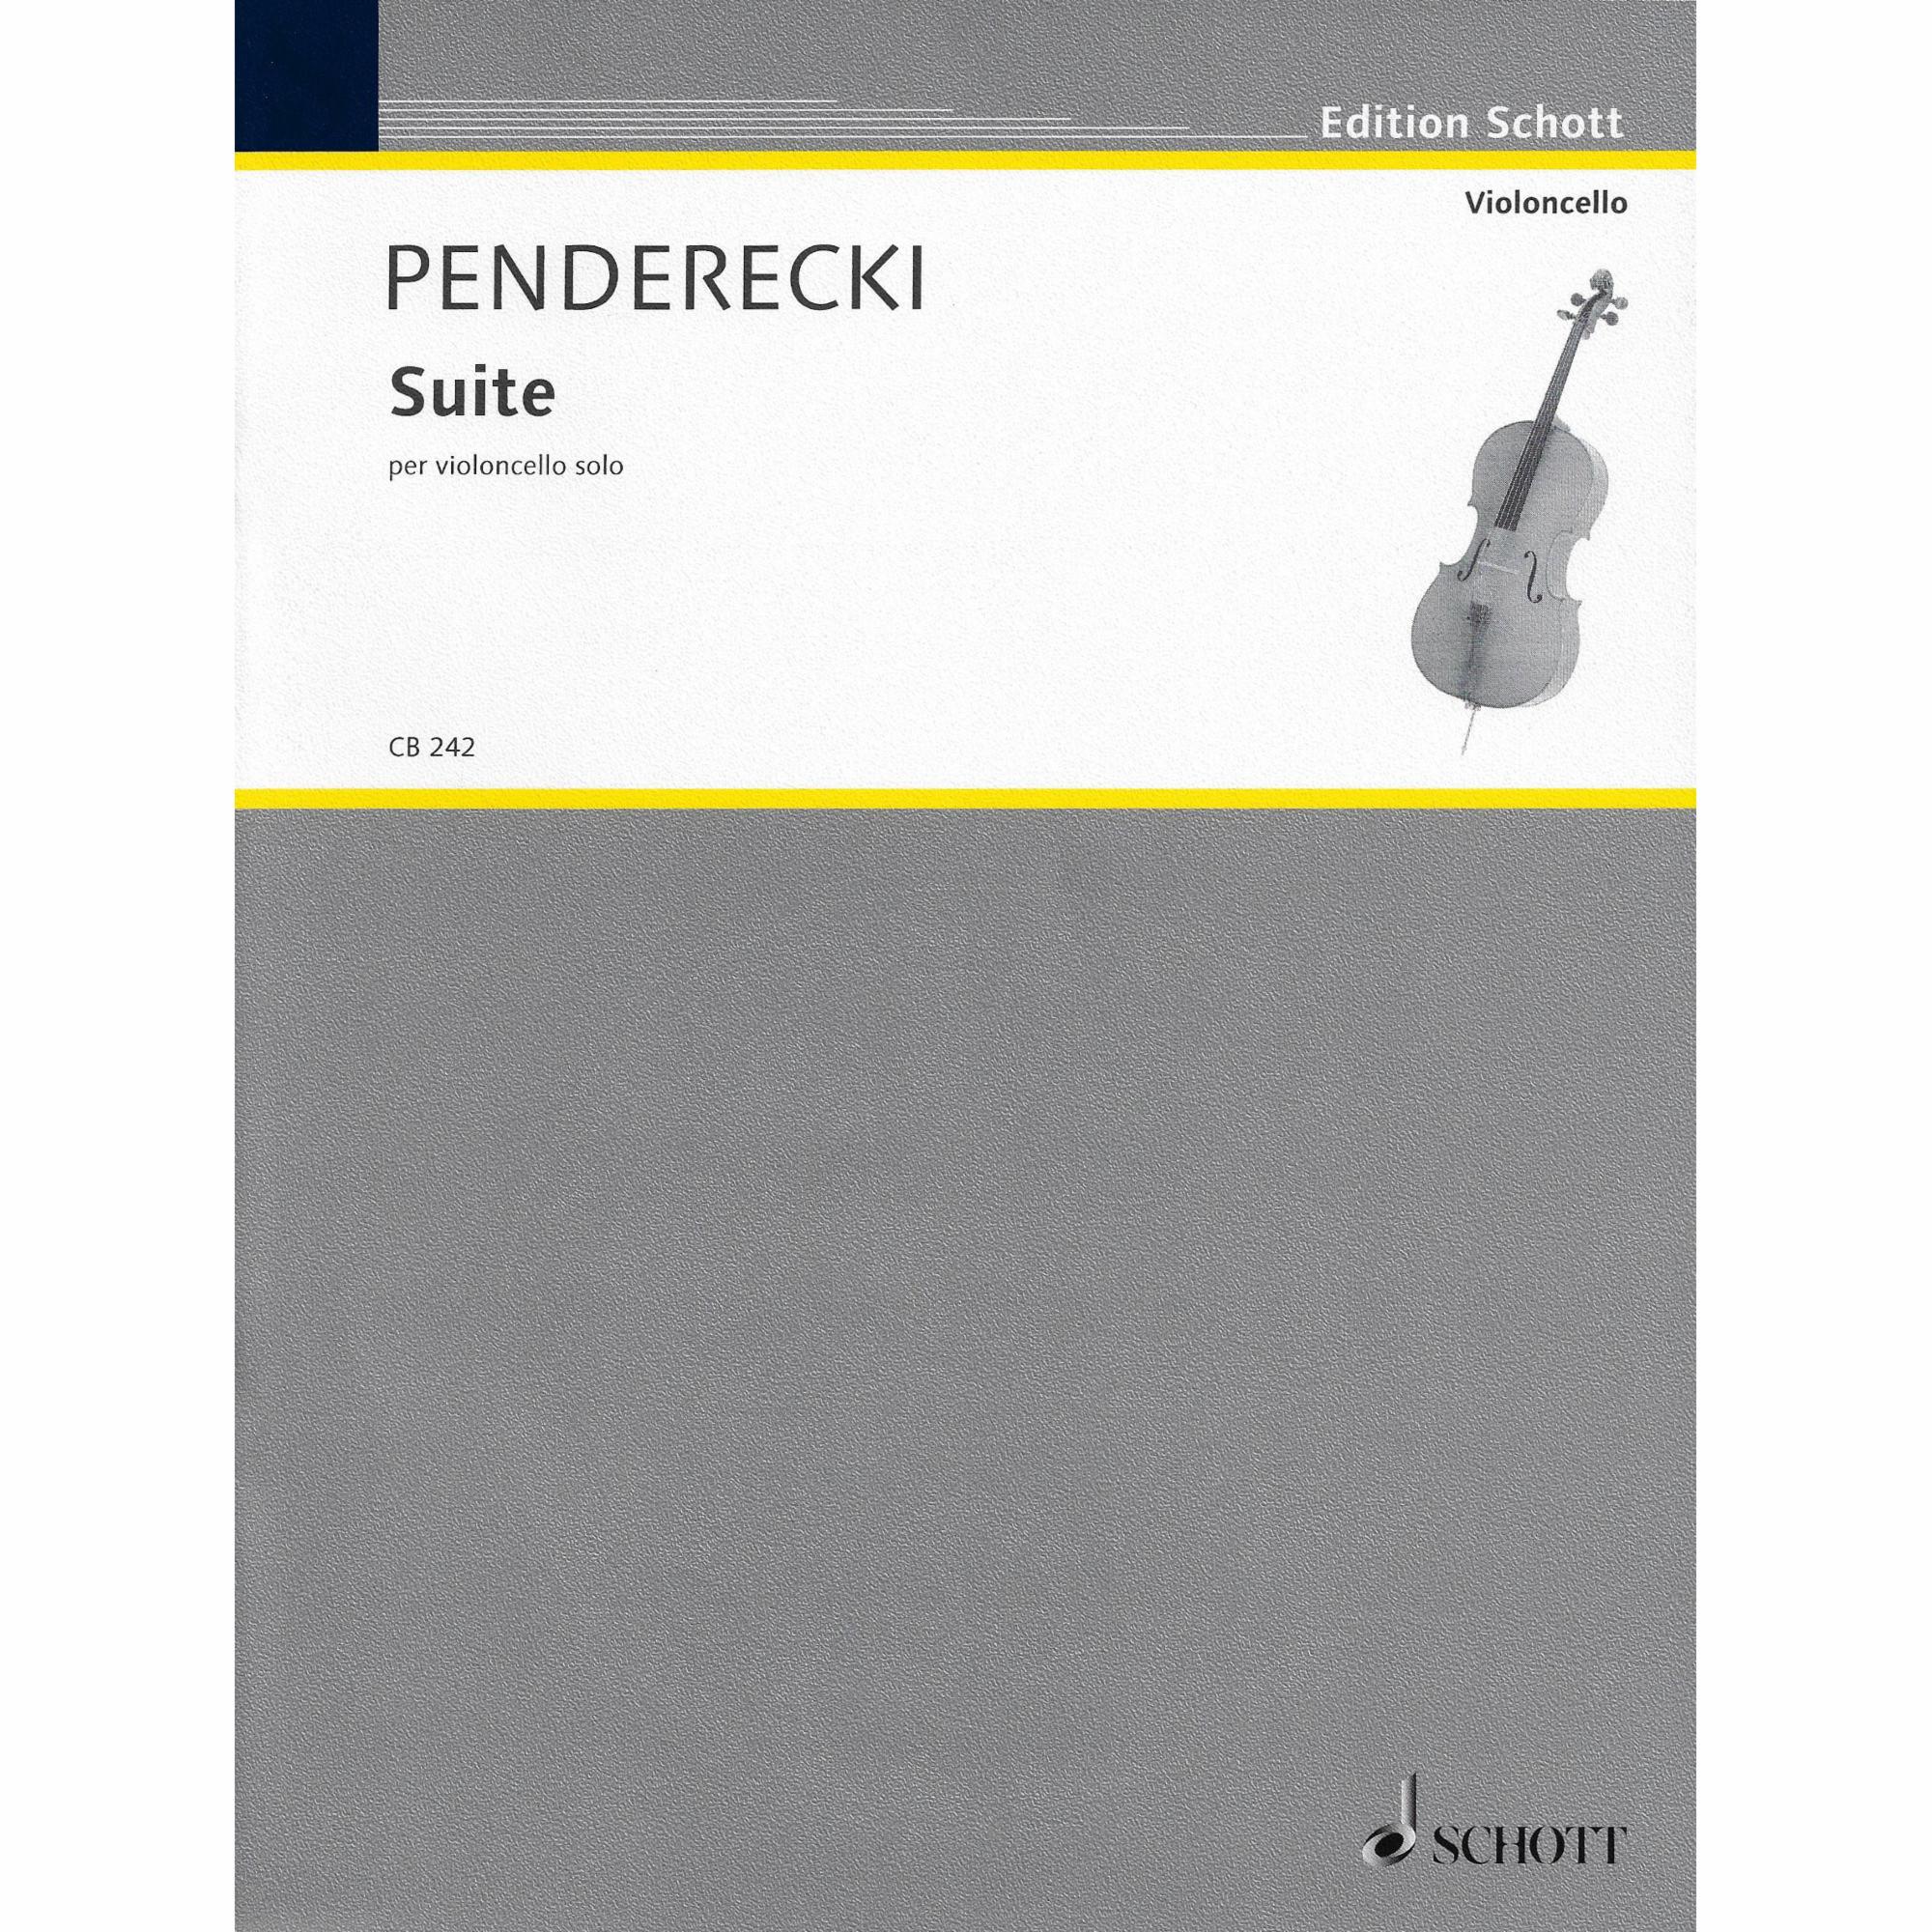 Penderecki -- Suite for Solo Cello